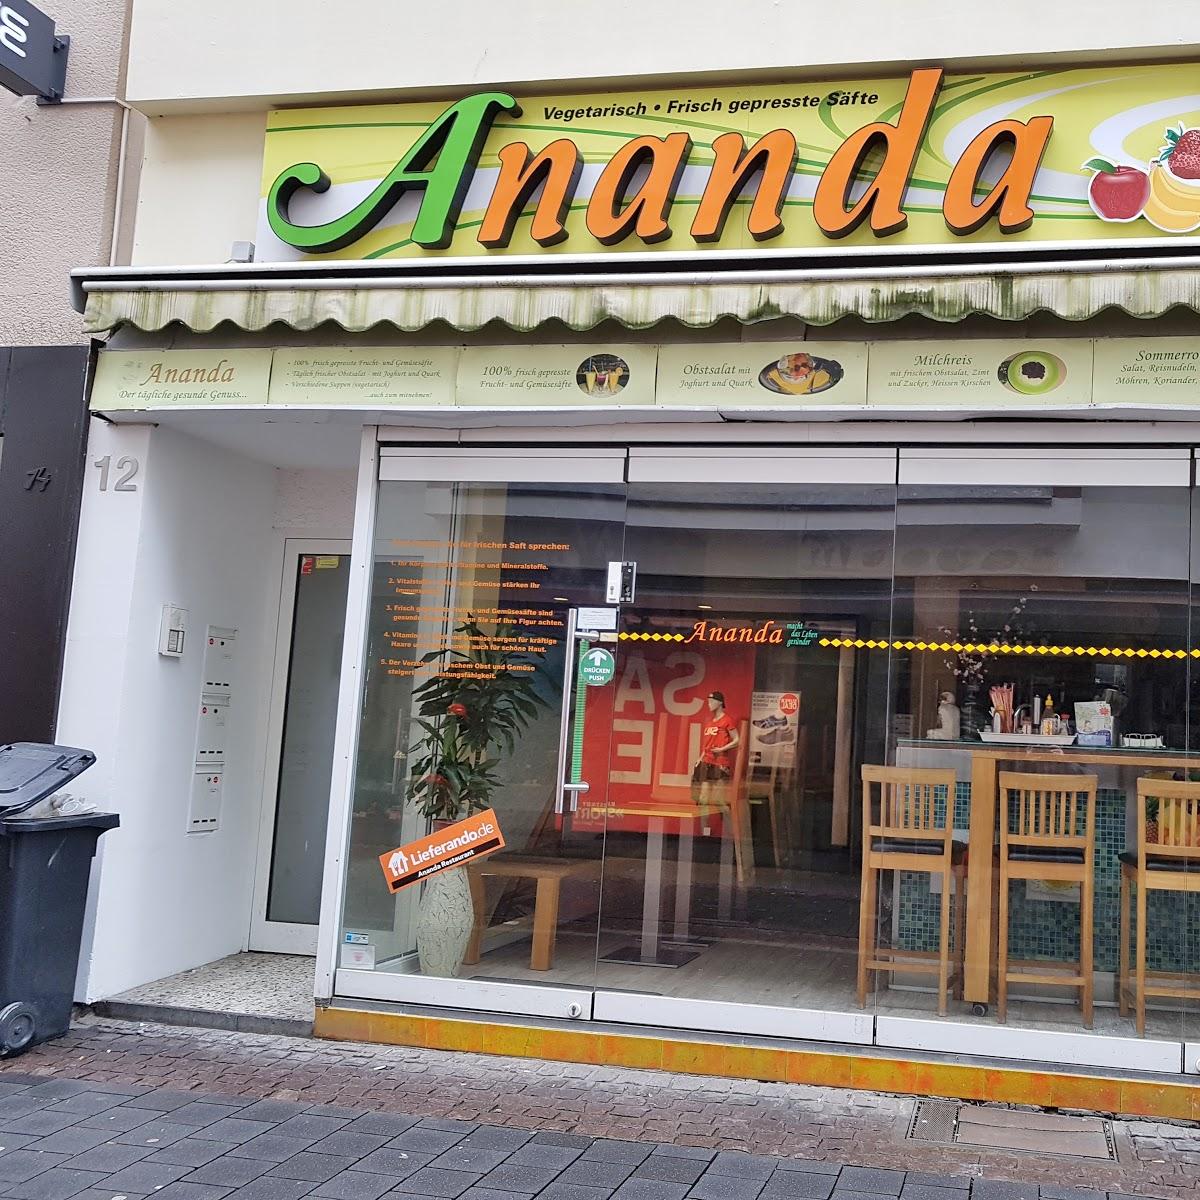 Restaurant "Ananda - veganes und vegetarisches Restaurant" in Bonn